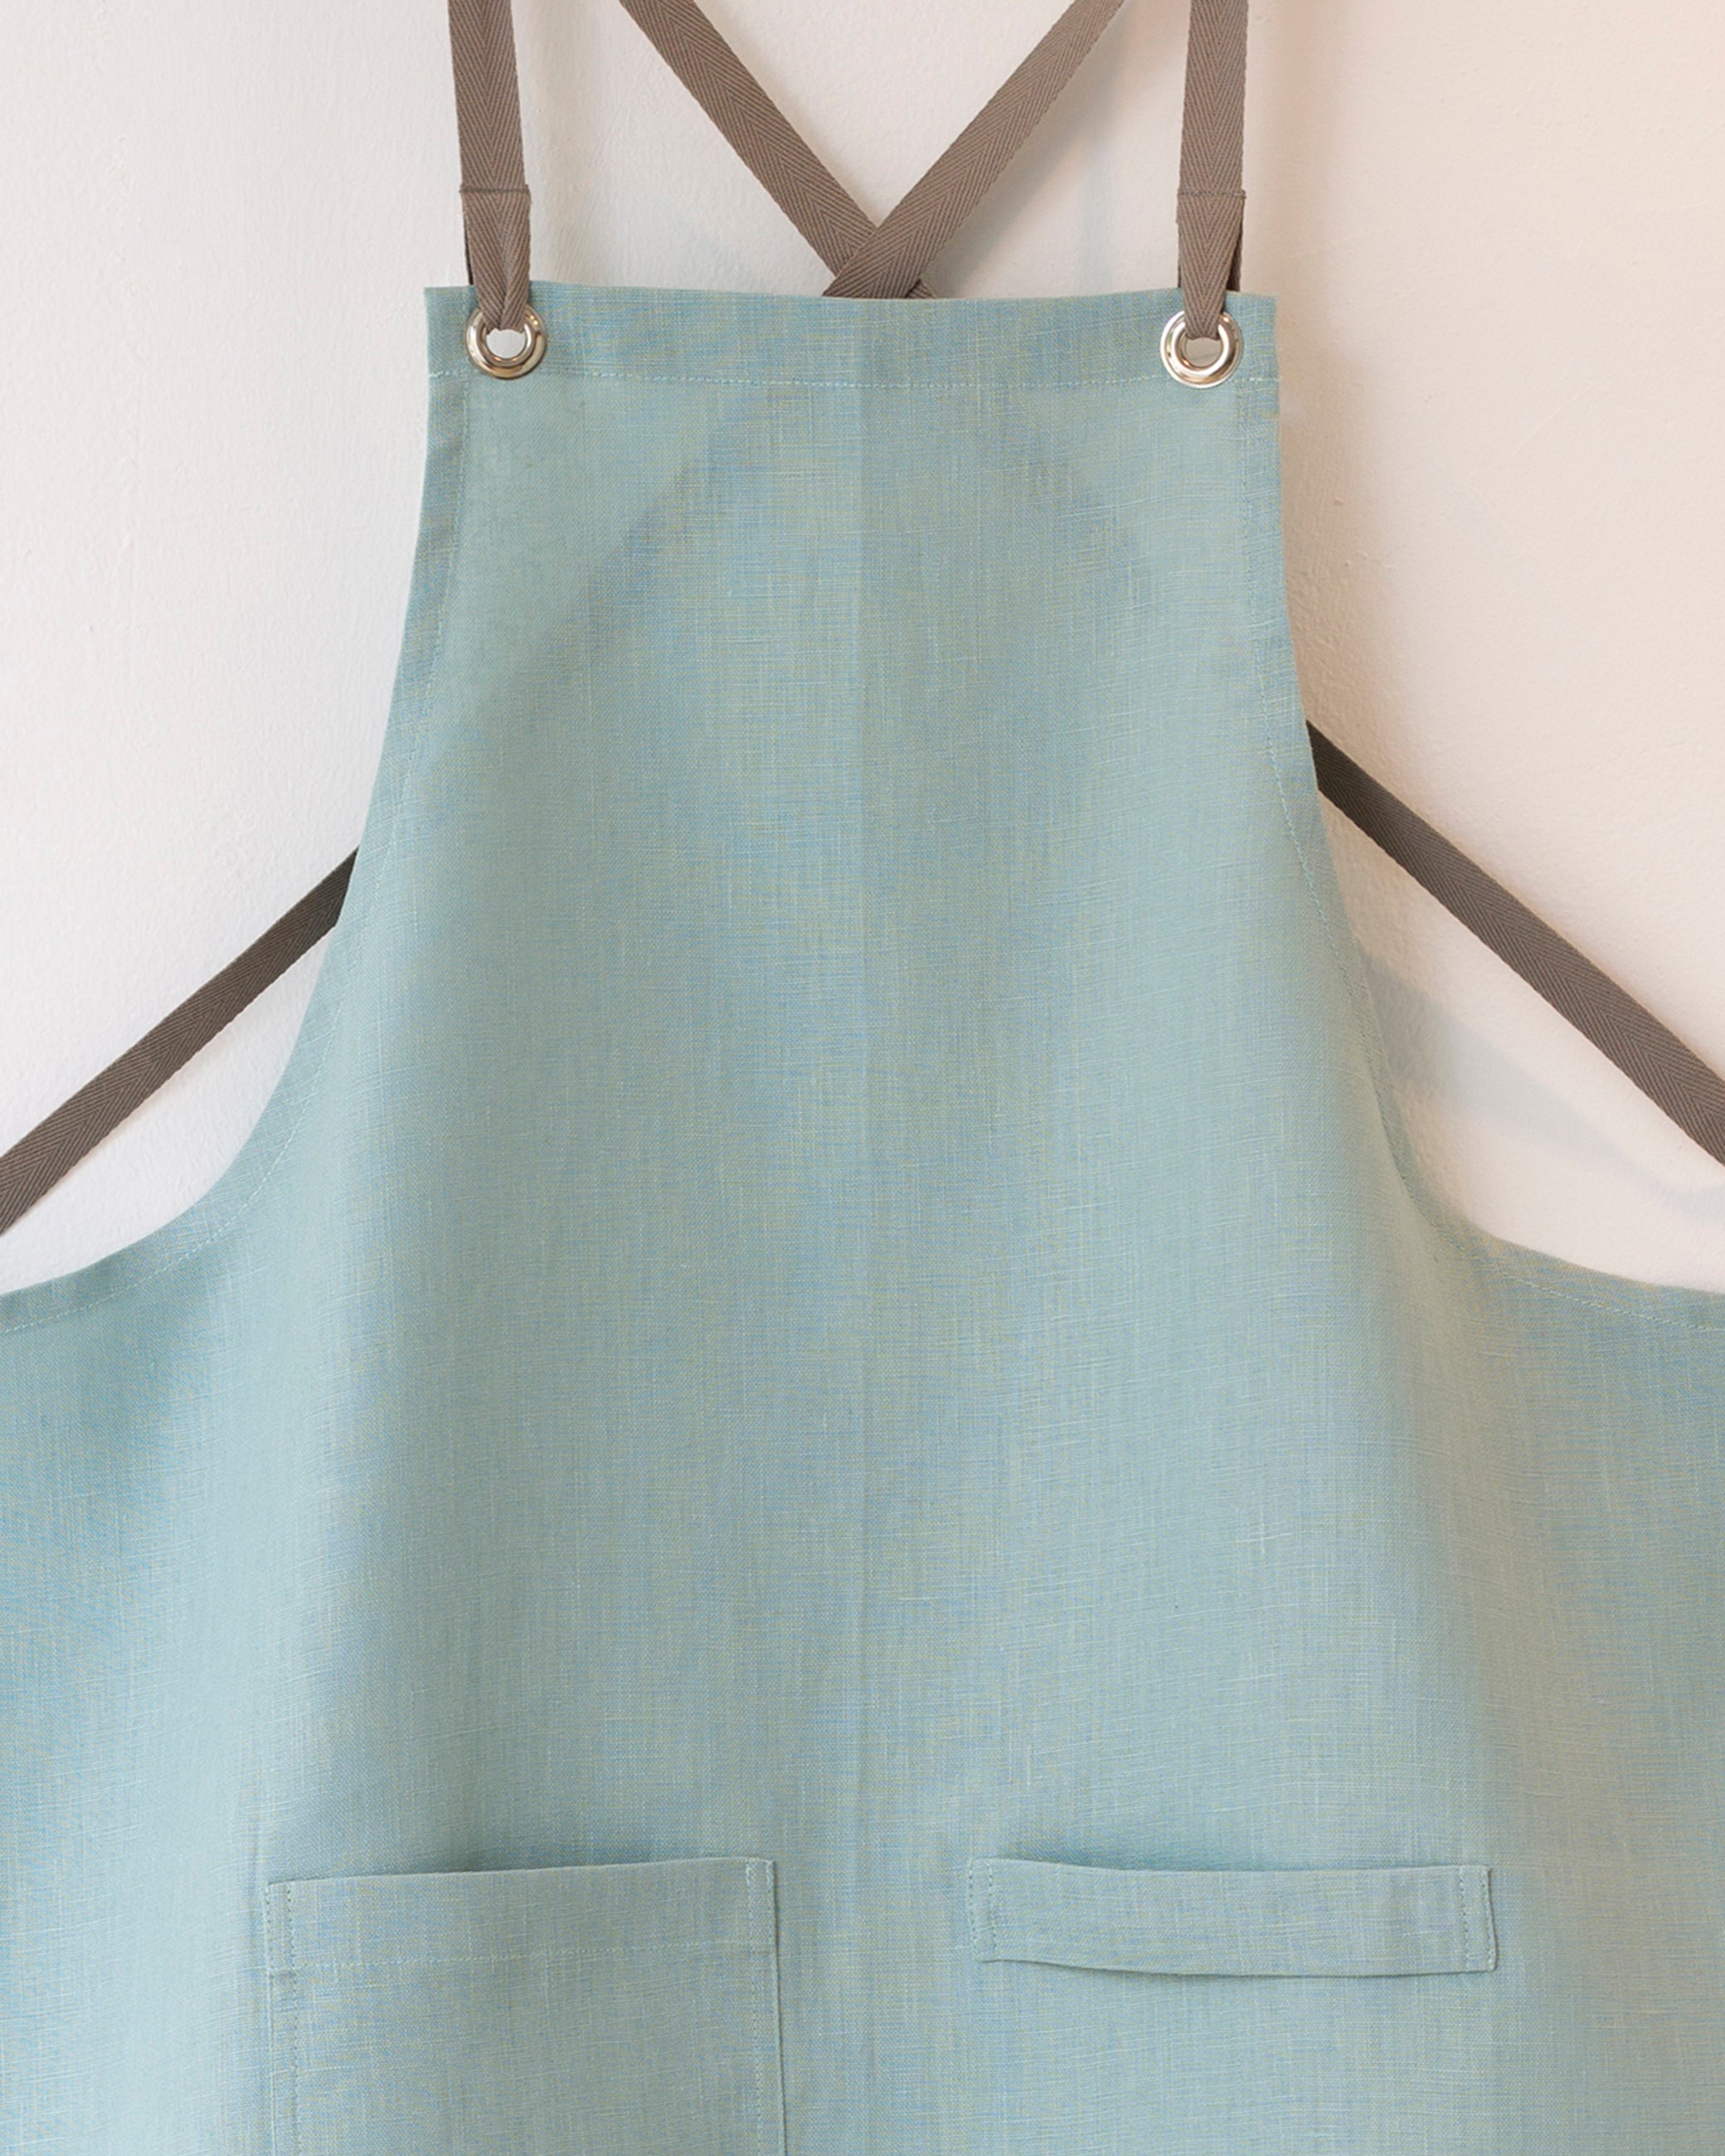 Kitchen Tool Linen Towel – Studiopatro